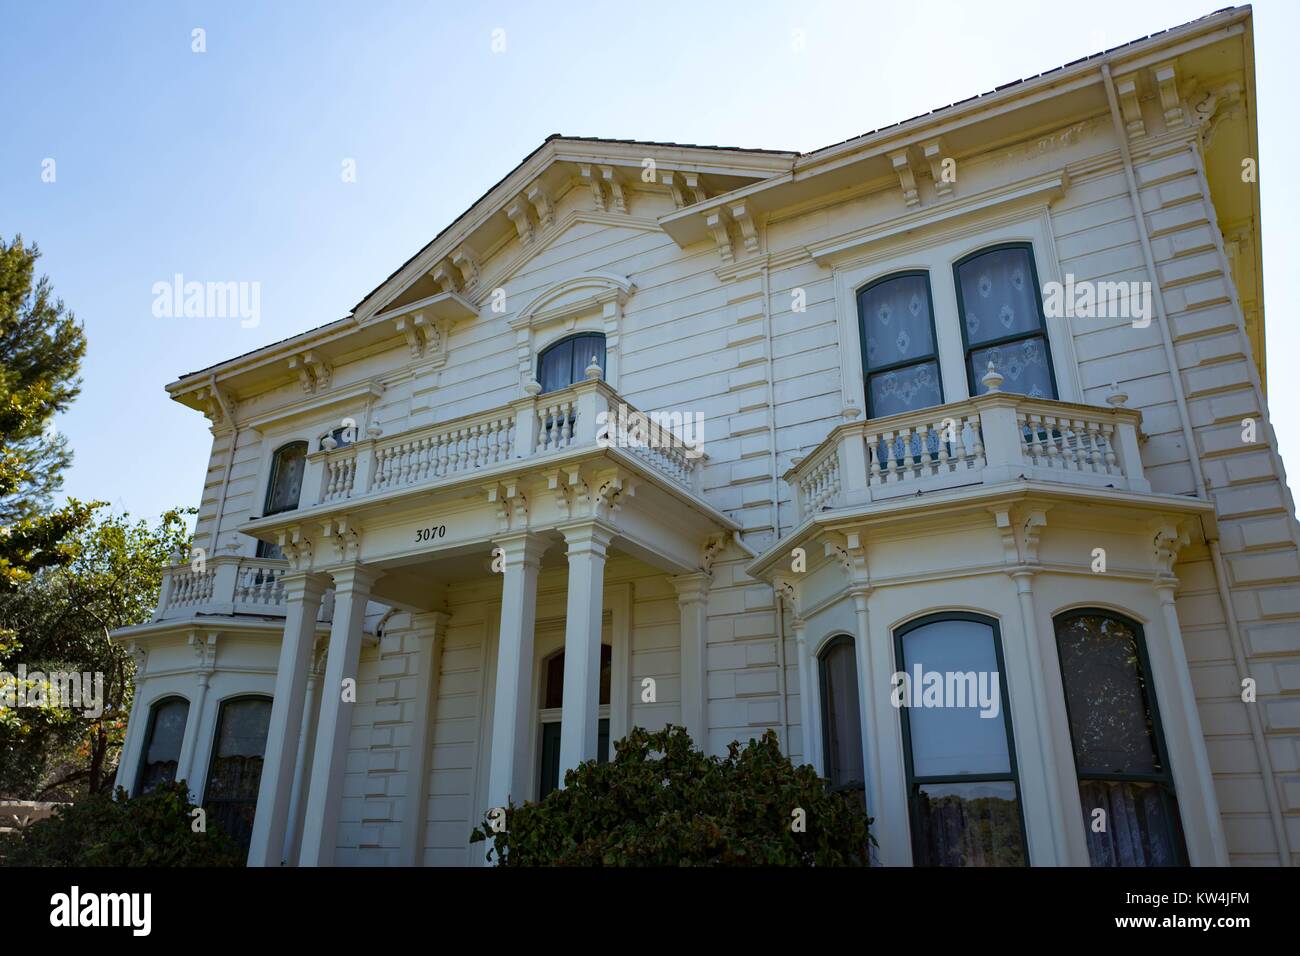 Vista frontale del faceade della casa Rengstorff, restaurato casa vittoriana e una delle prime case costruite nella Silicon Valley Town di Mountain View, California, 24 agosto 2016. Foto Stock